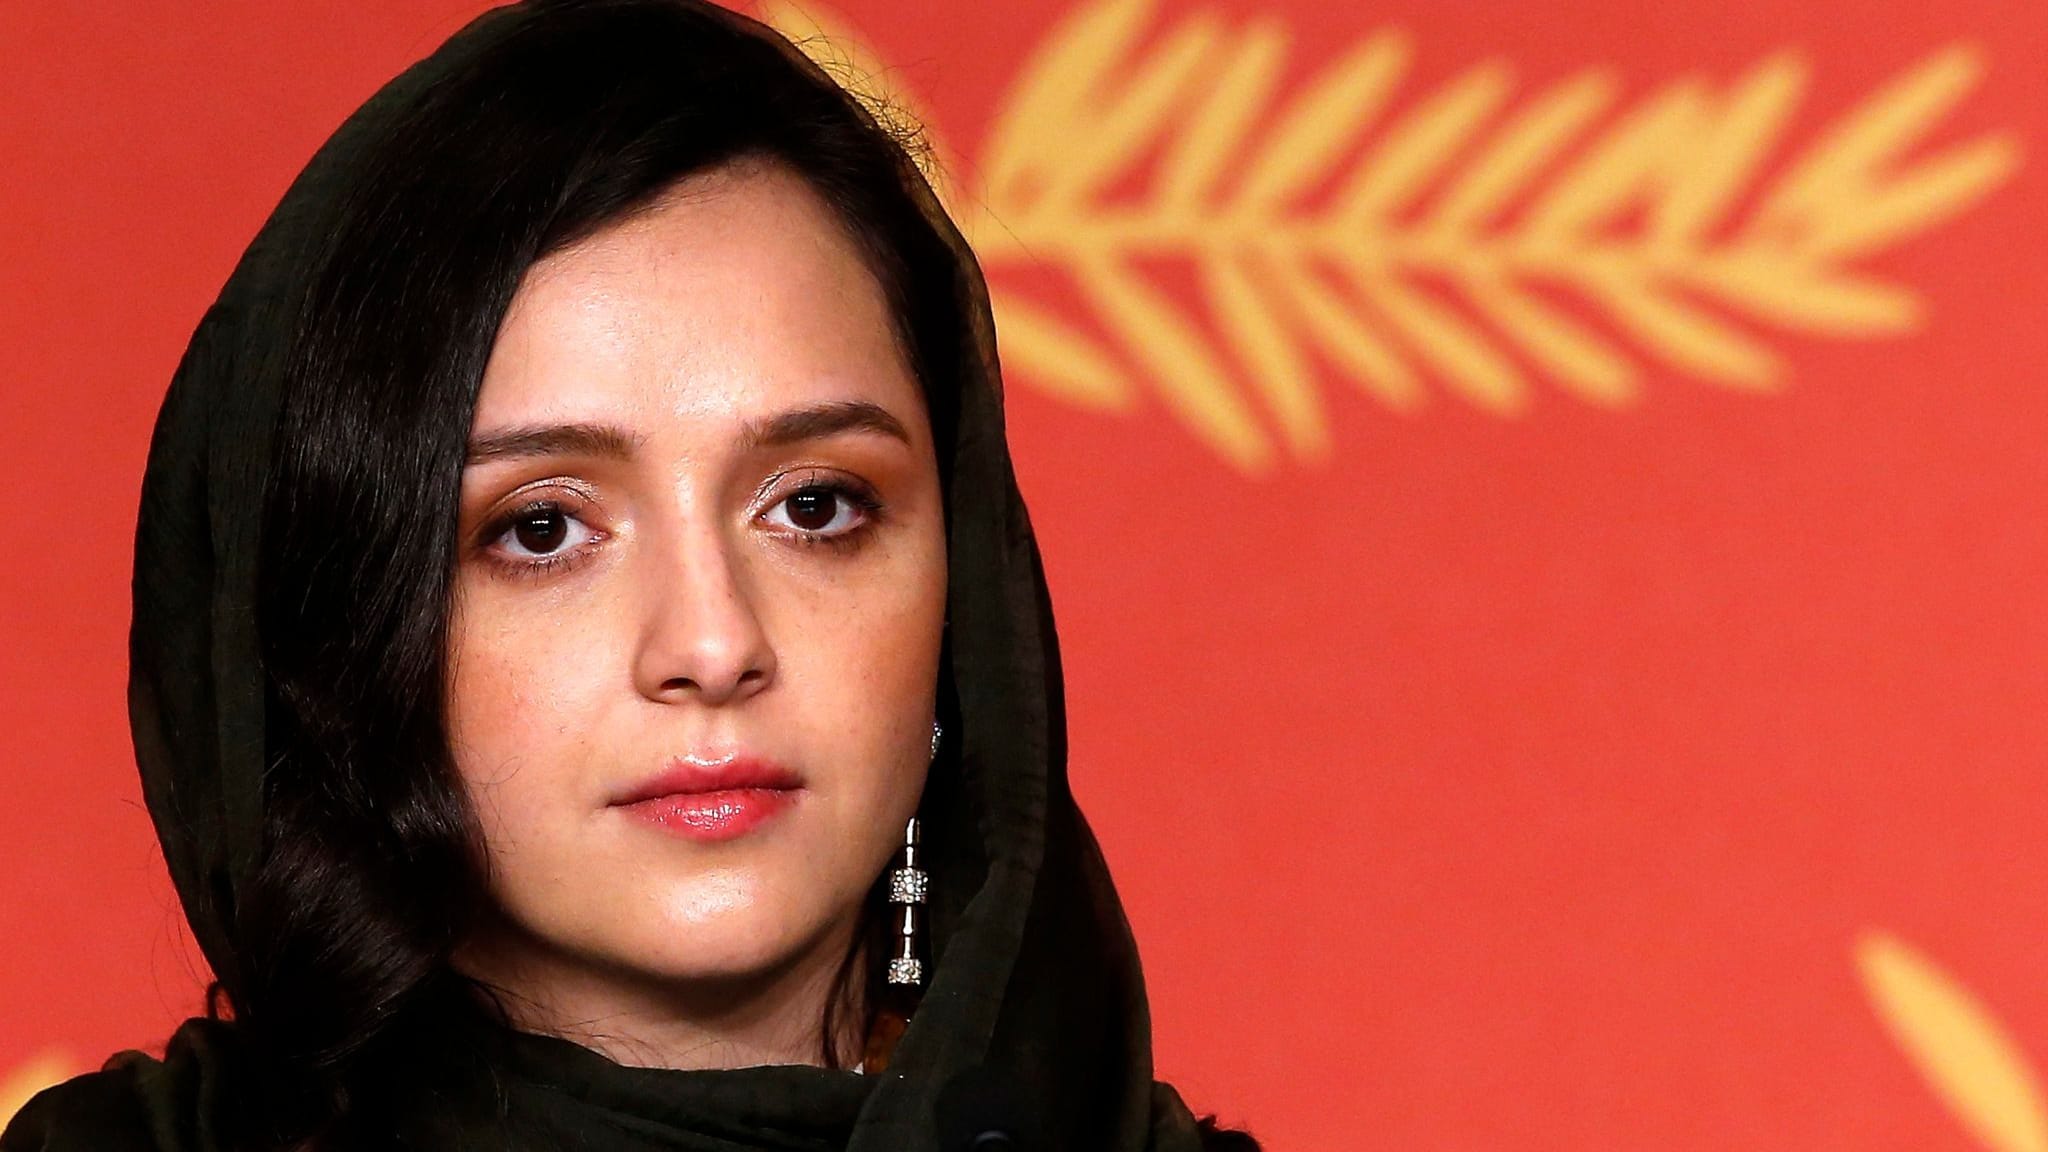 Berühmte Schauspielerin im Iran verhaftet